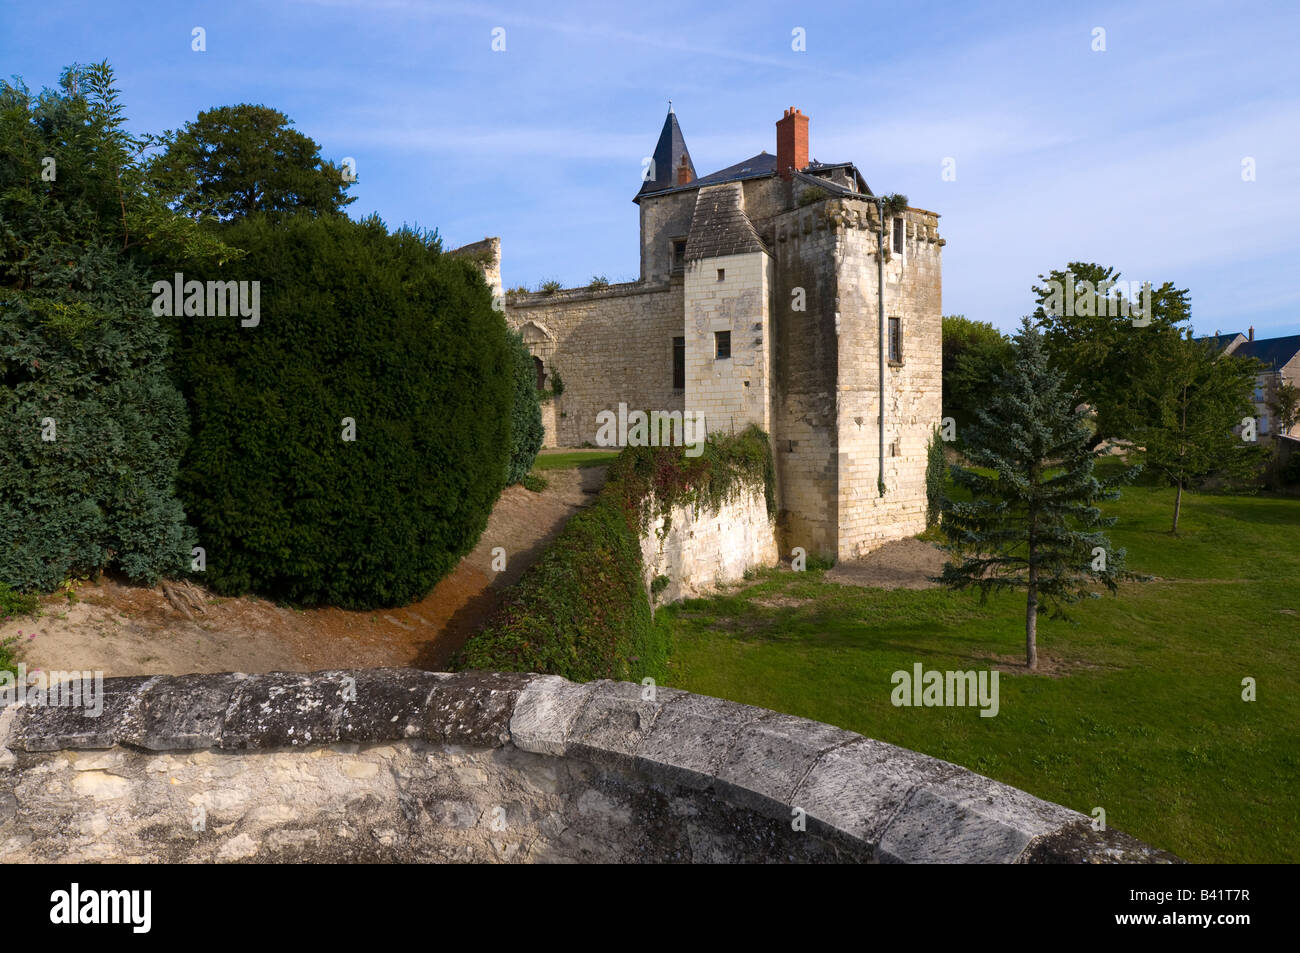 Sainte-Maure-de-Touraine castle, France. Stock Photo